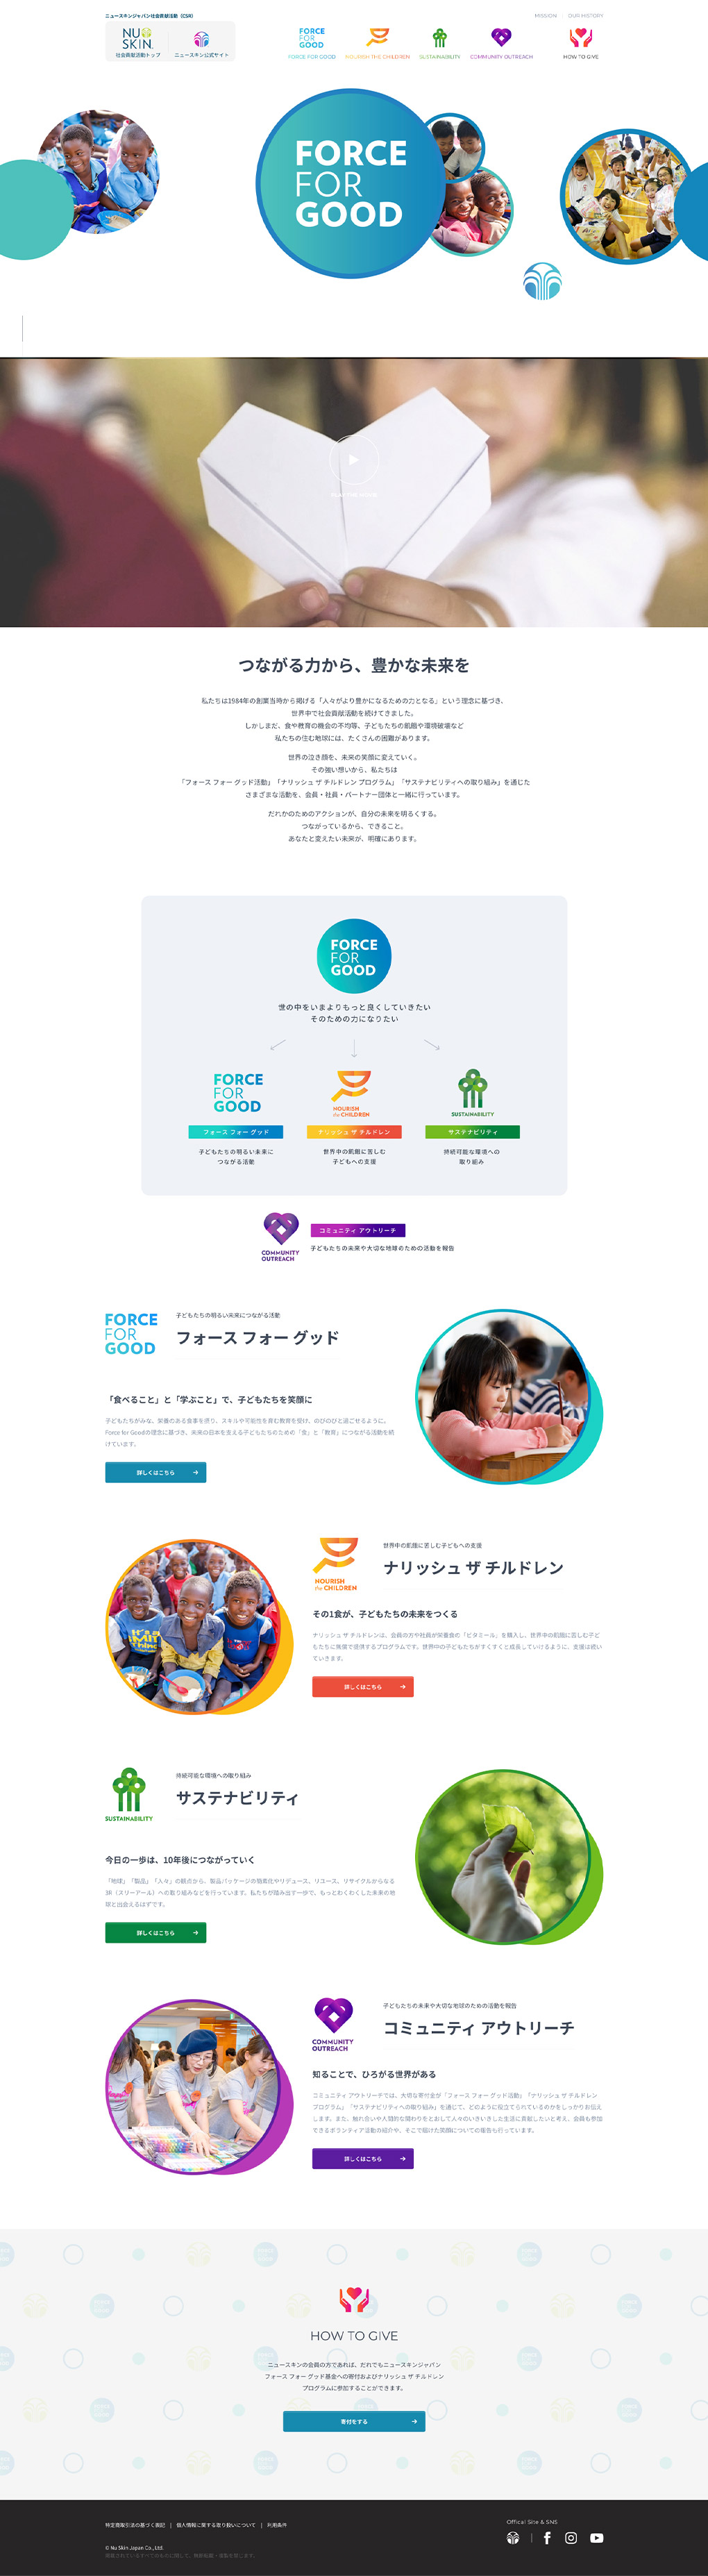 Nu Skin Japan CSRのメイン画像が表示されています